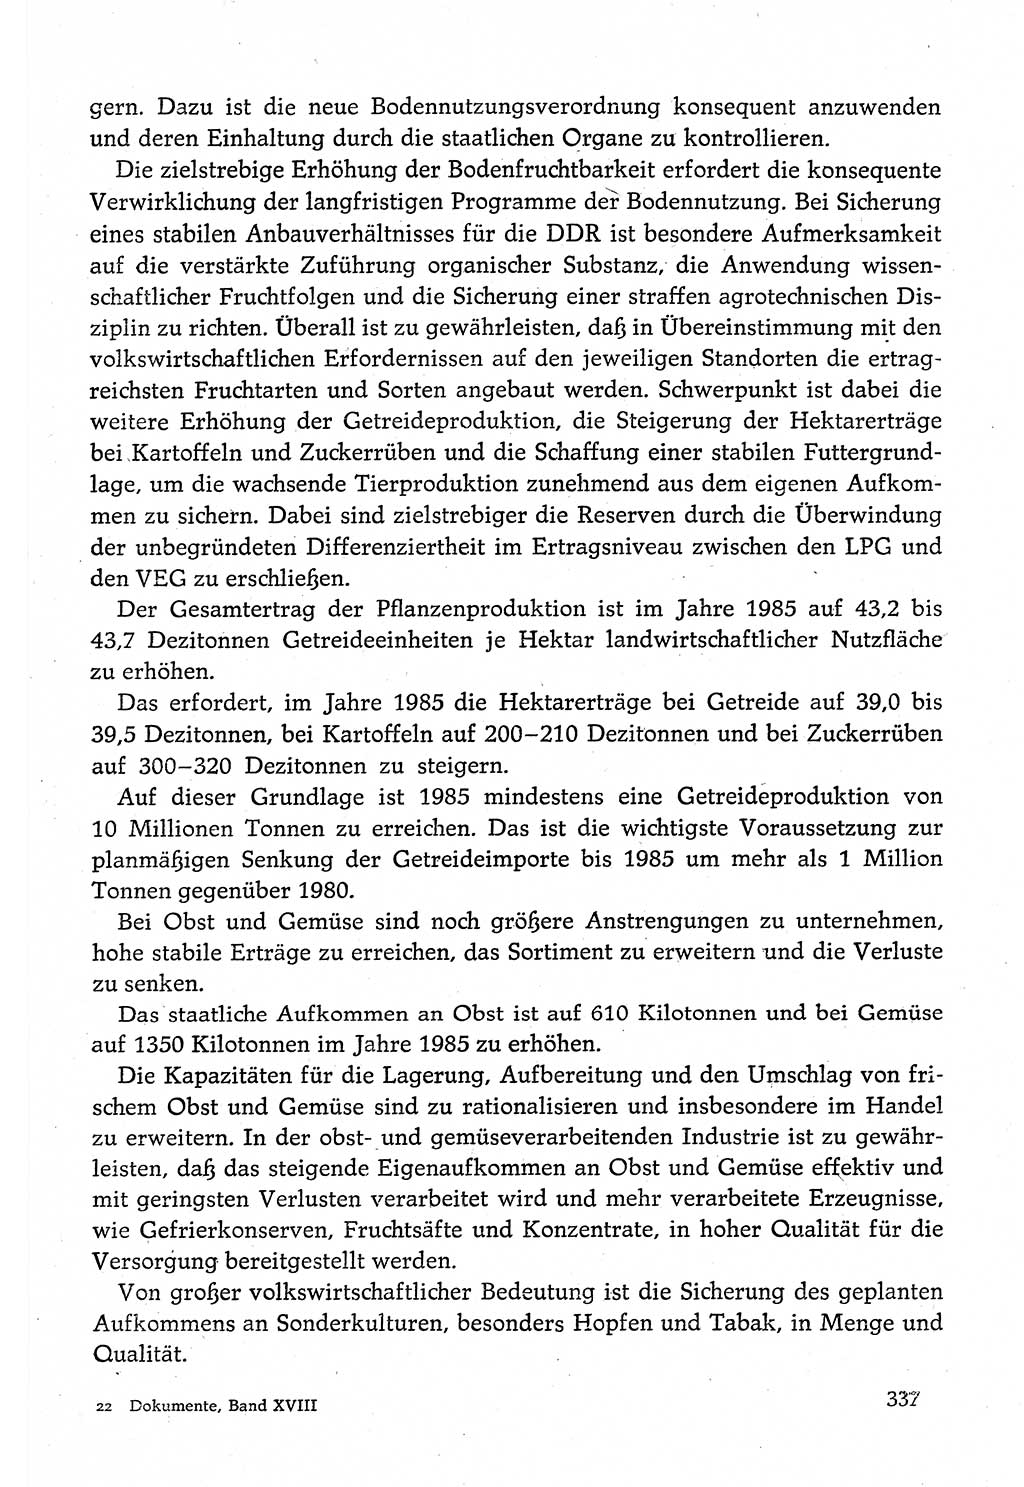 Dokumente der Sozialistischen Einheitspartei Deutschlands (SED) [Deutsche Demokratische Republik (DDR)] 1980-1981, Seite 337 (Dok. SED DDR 1980-1981, S. 337)